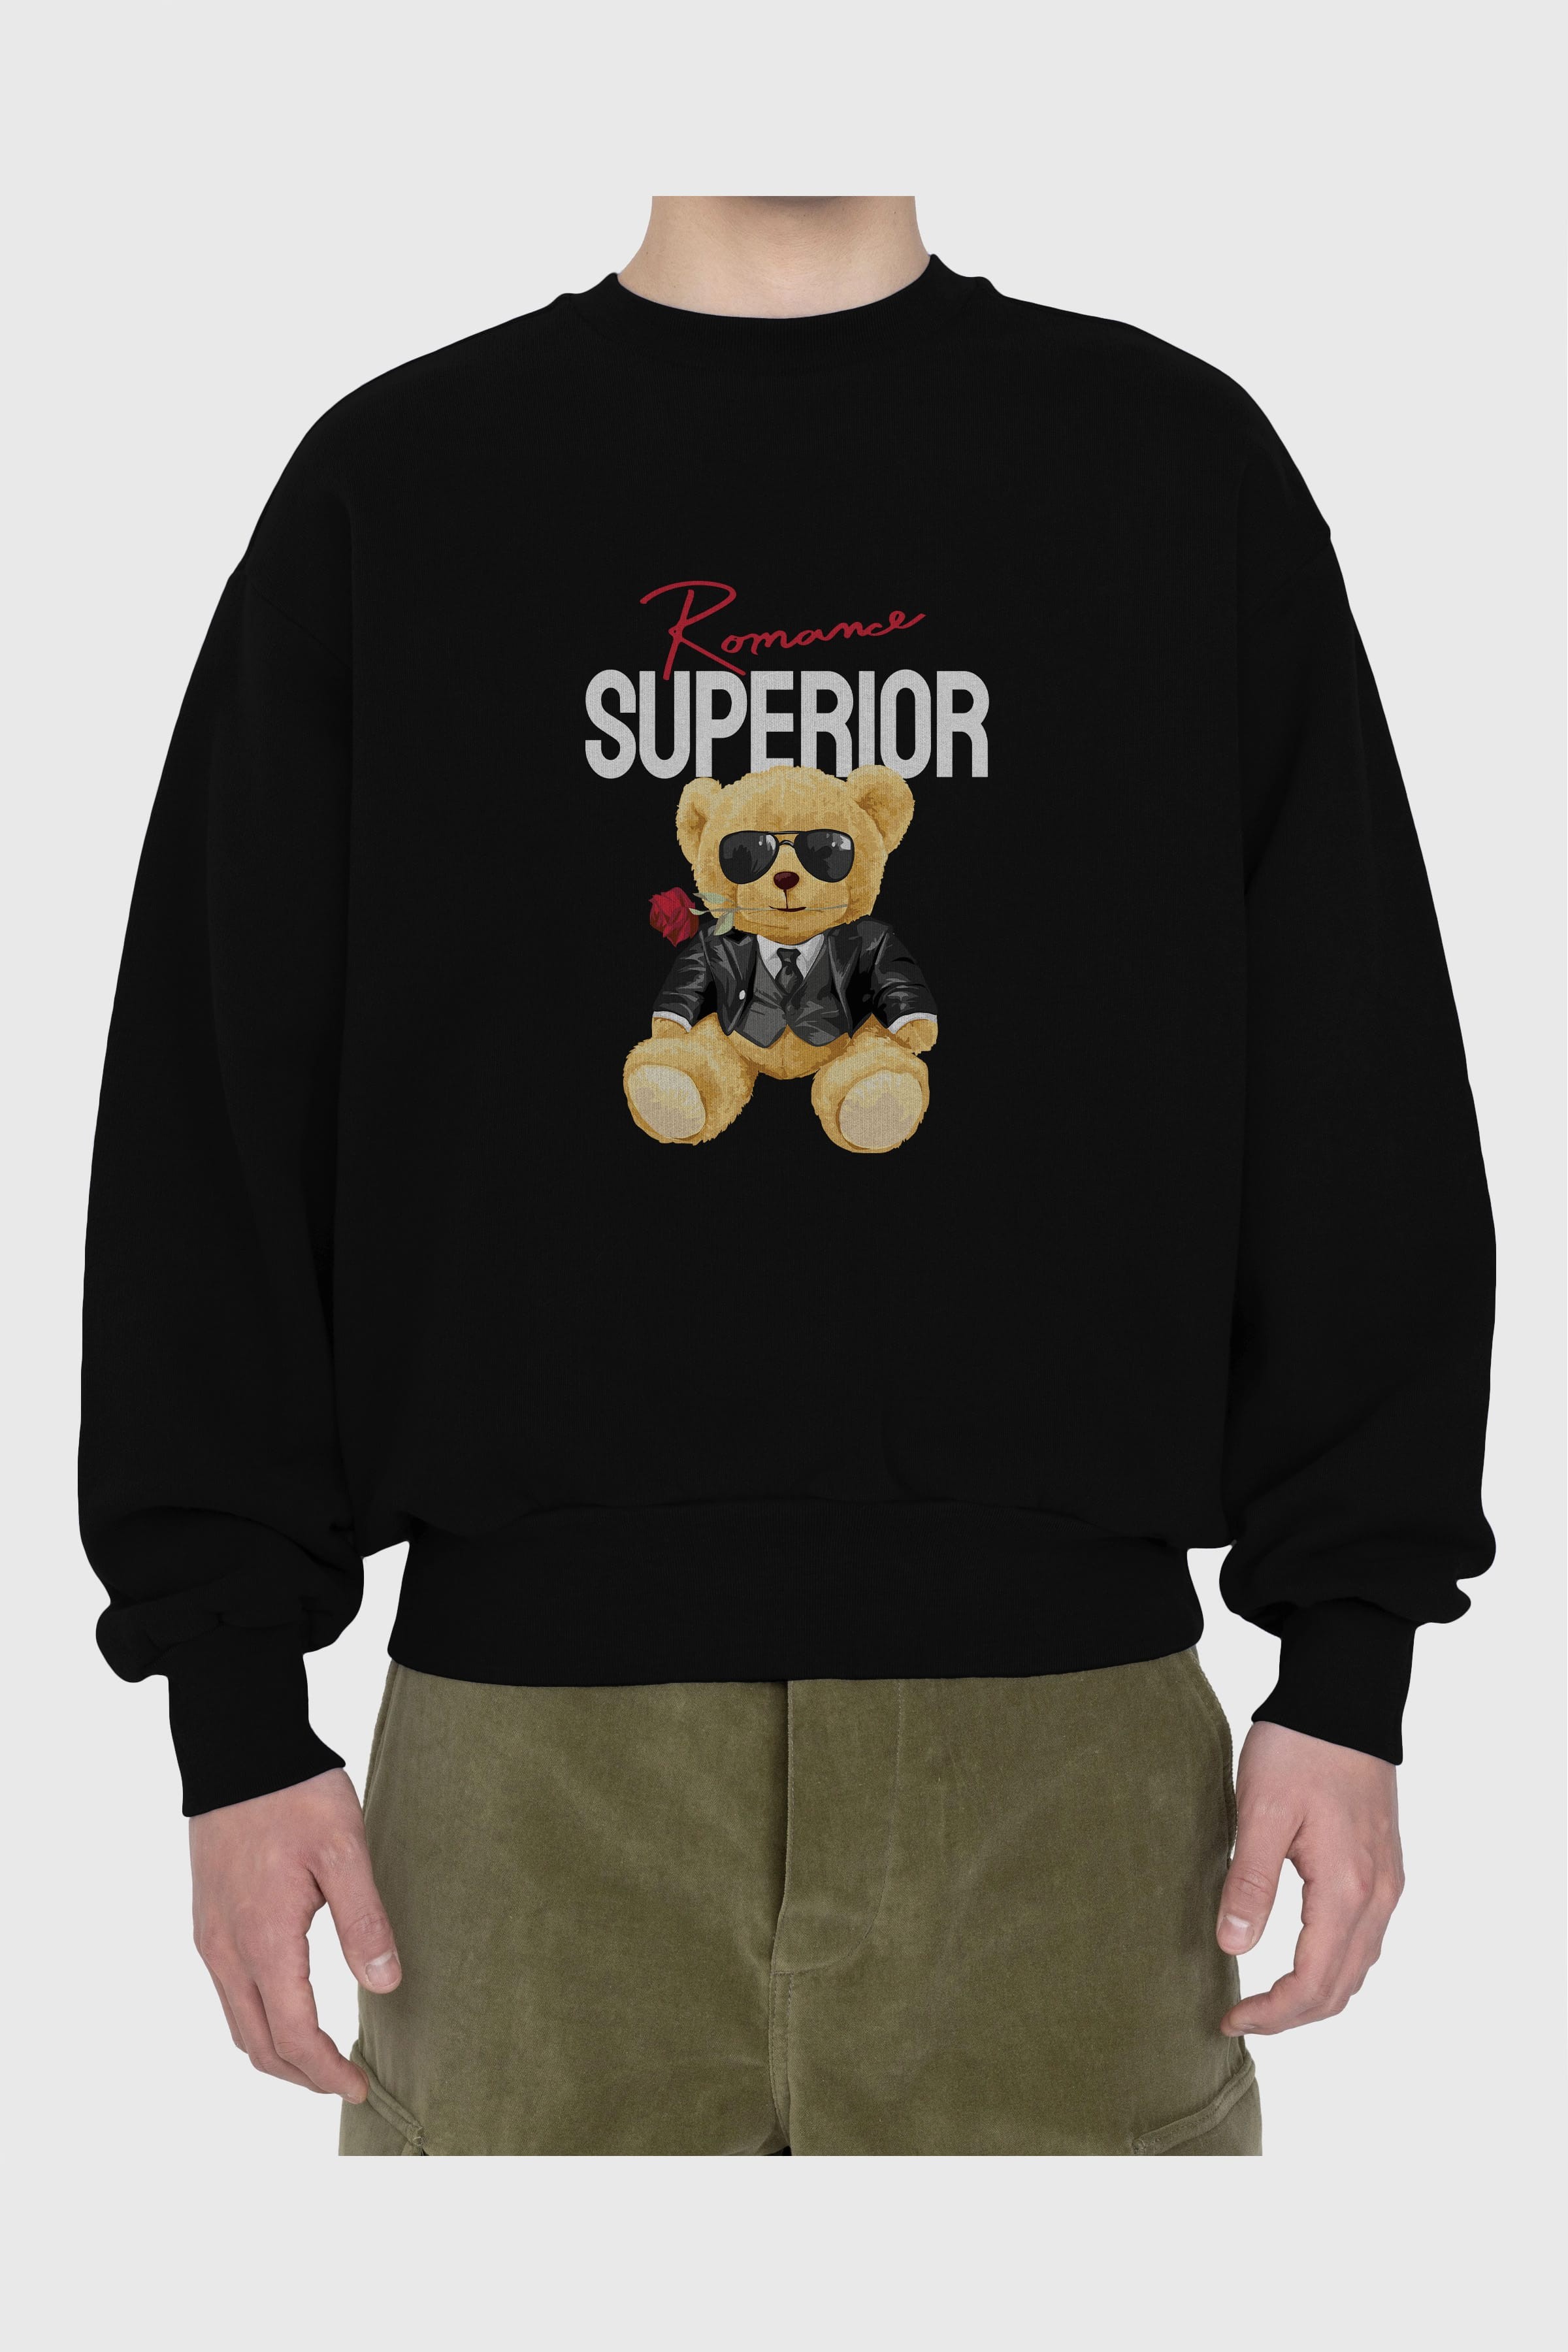 Teddy Bear Romance Superior Ön Baskılı Oversize Sweatshirt Erkek Kadın Unisex